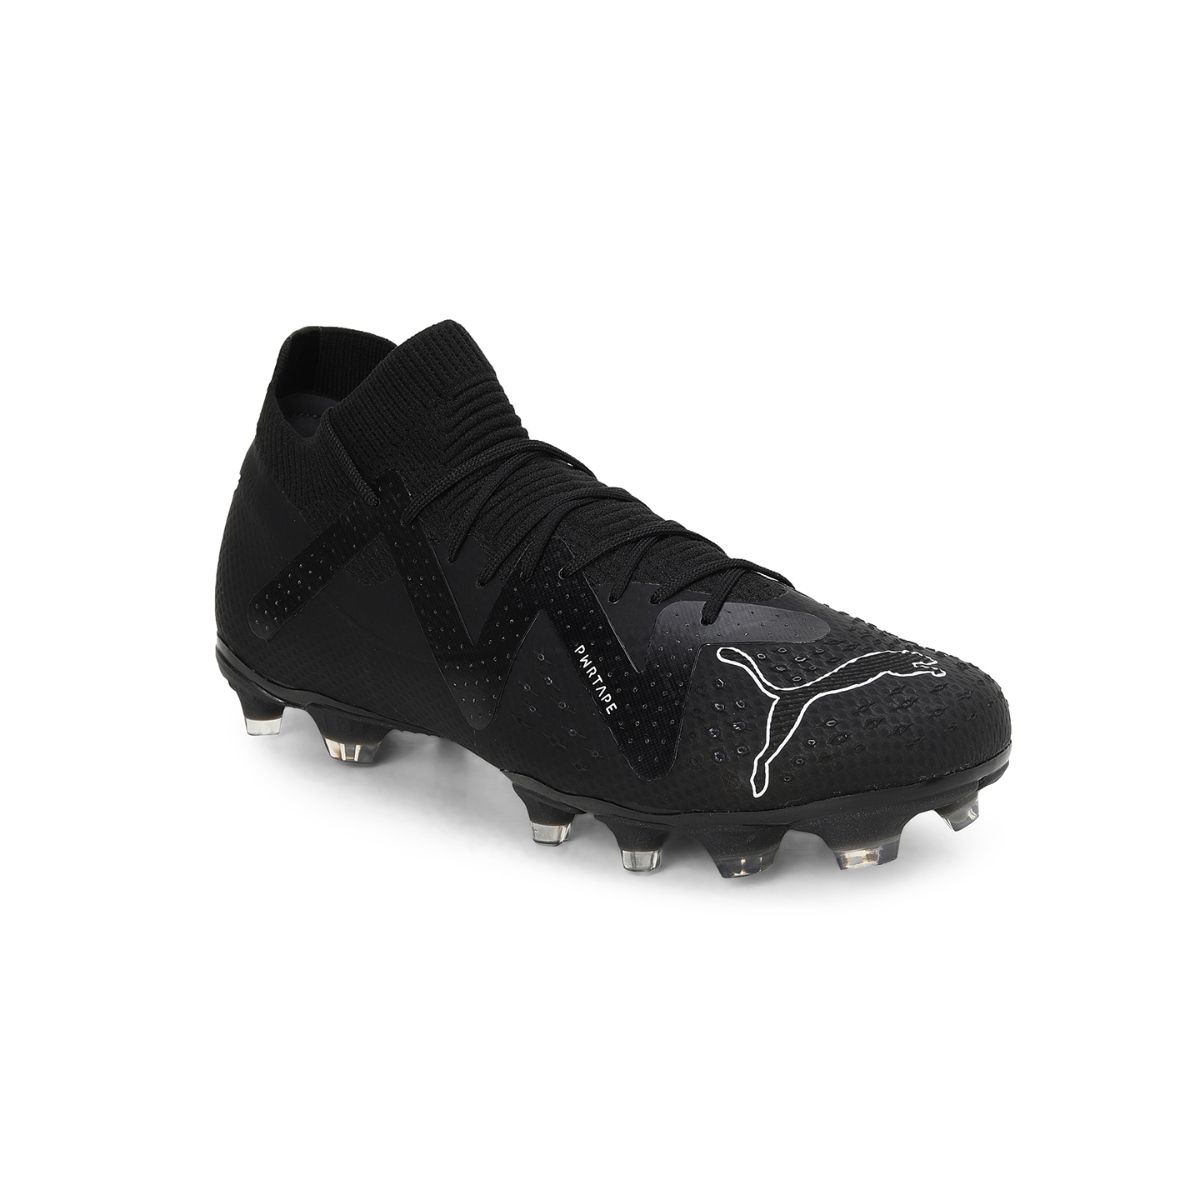 Puma Future Pro Fg/ag Unisex Black Football Boots: Buy Puma Future Pro ...